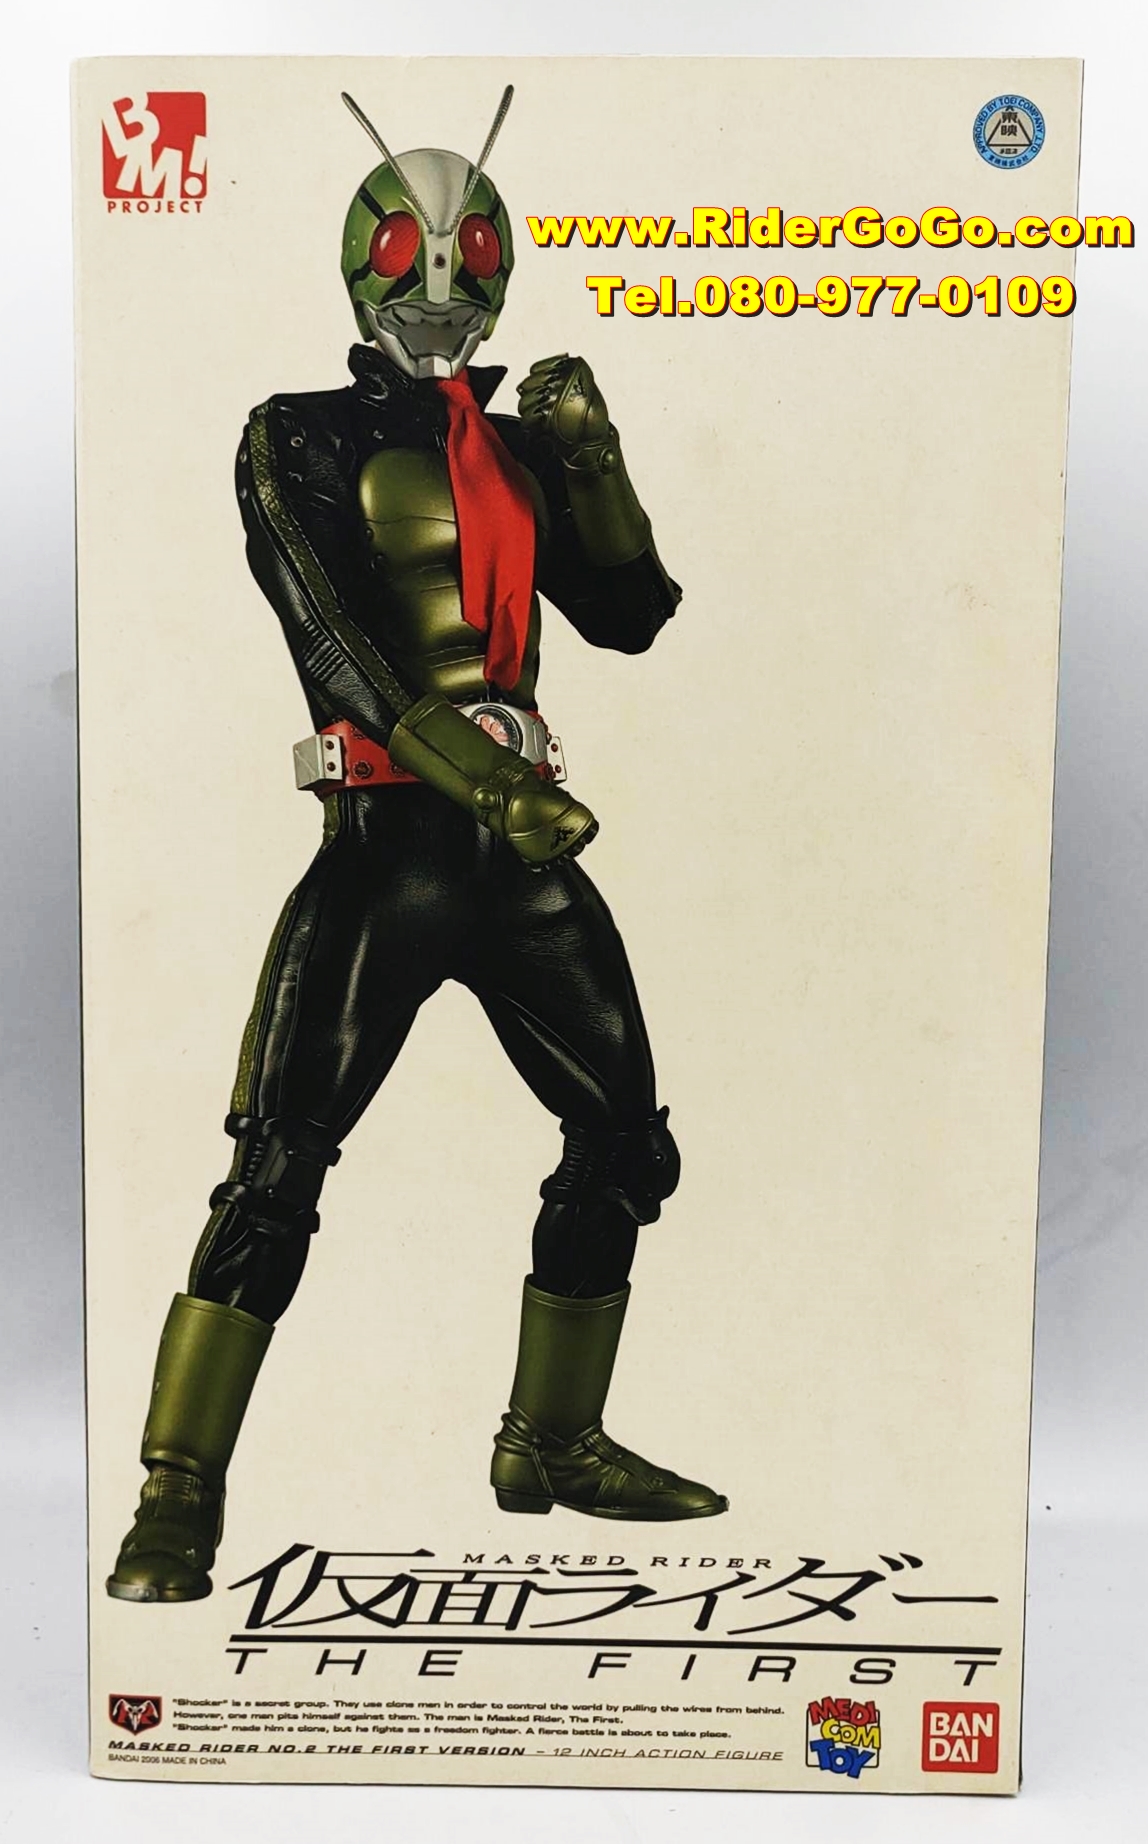 โมเดลชุดผ้ามาสค์ไรเดอร์หมายเลข2 หรือมาสค์ไรเดอร์วี2 Medicom Toy Project BM Masked Rider No.2 The First Version ของแท้จากประเทศญี่ปุ่น รูปที่ 1